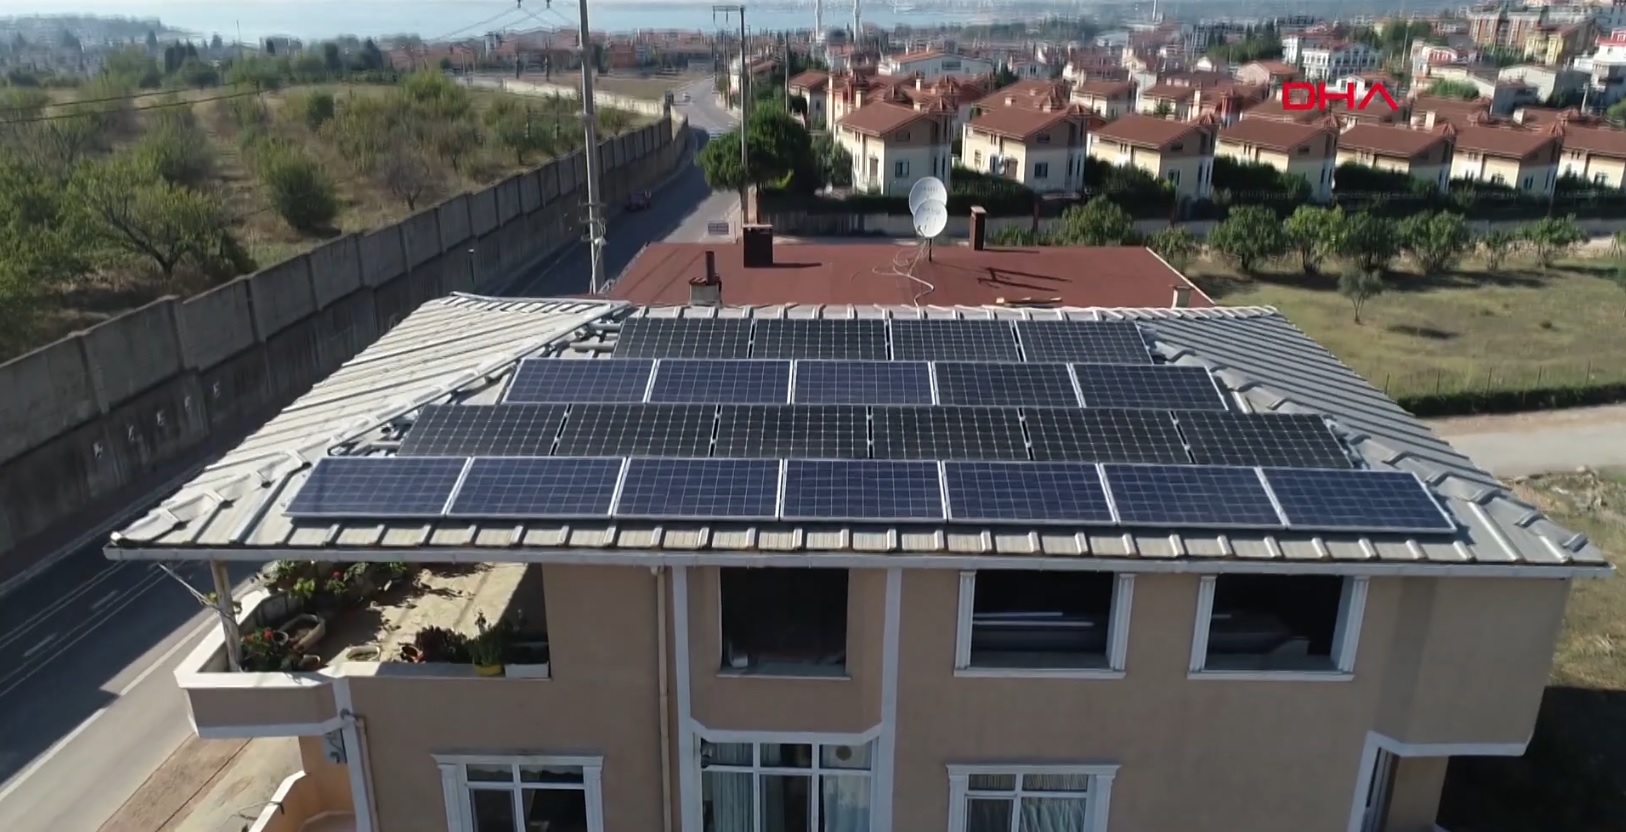 Bir evin ihtiyacı Solar enerji maliyeti ne kadar? - Solar Blog by Kerem